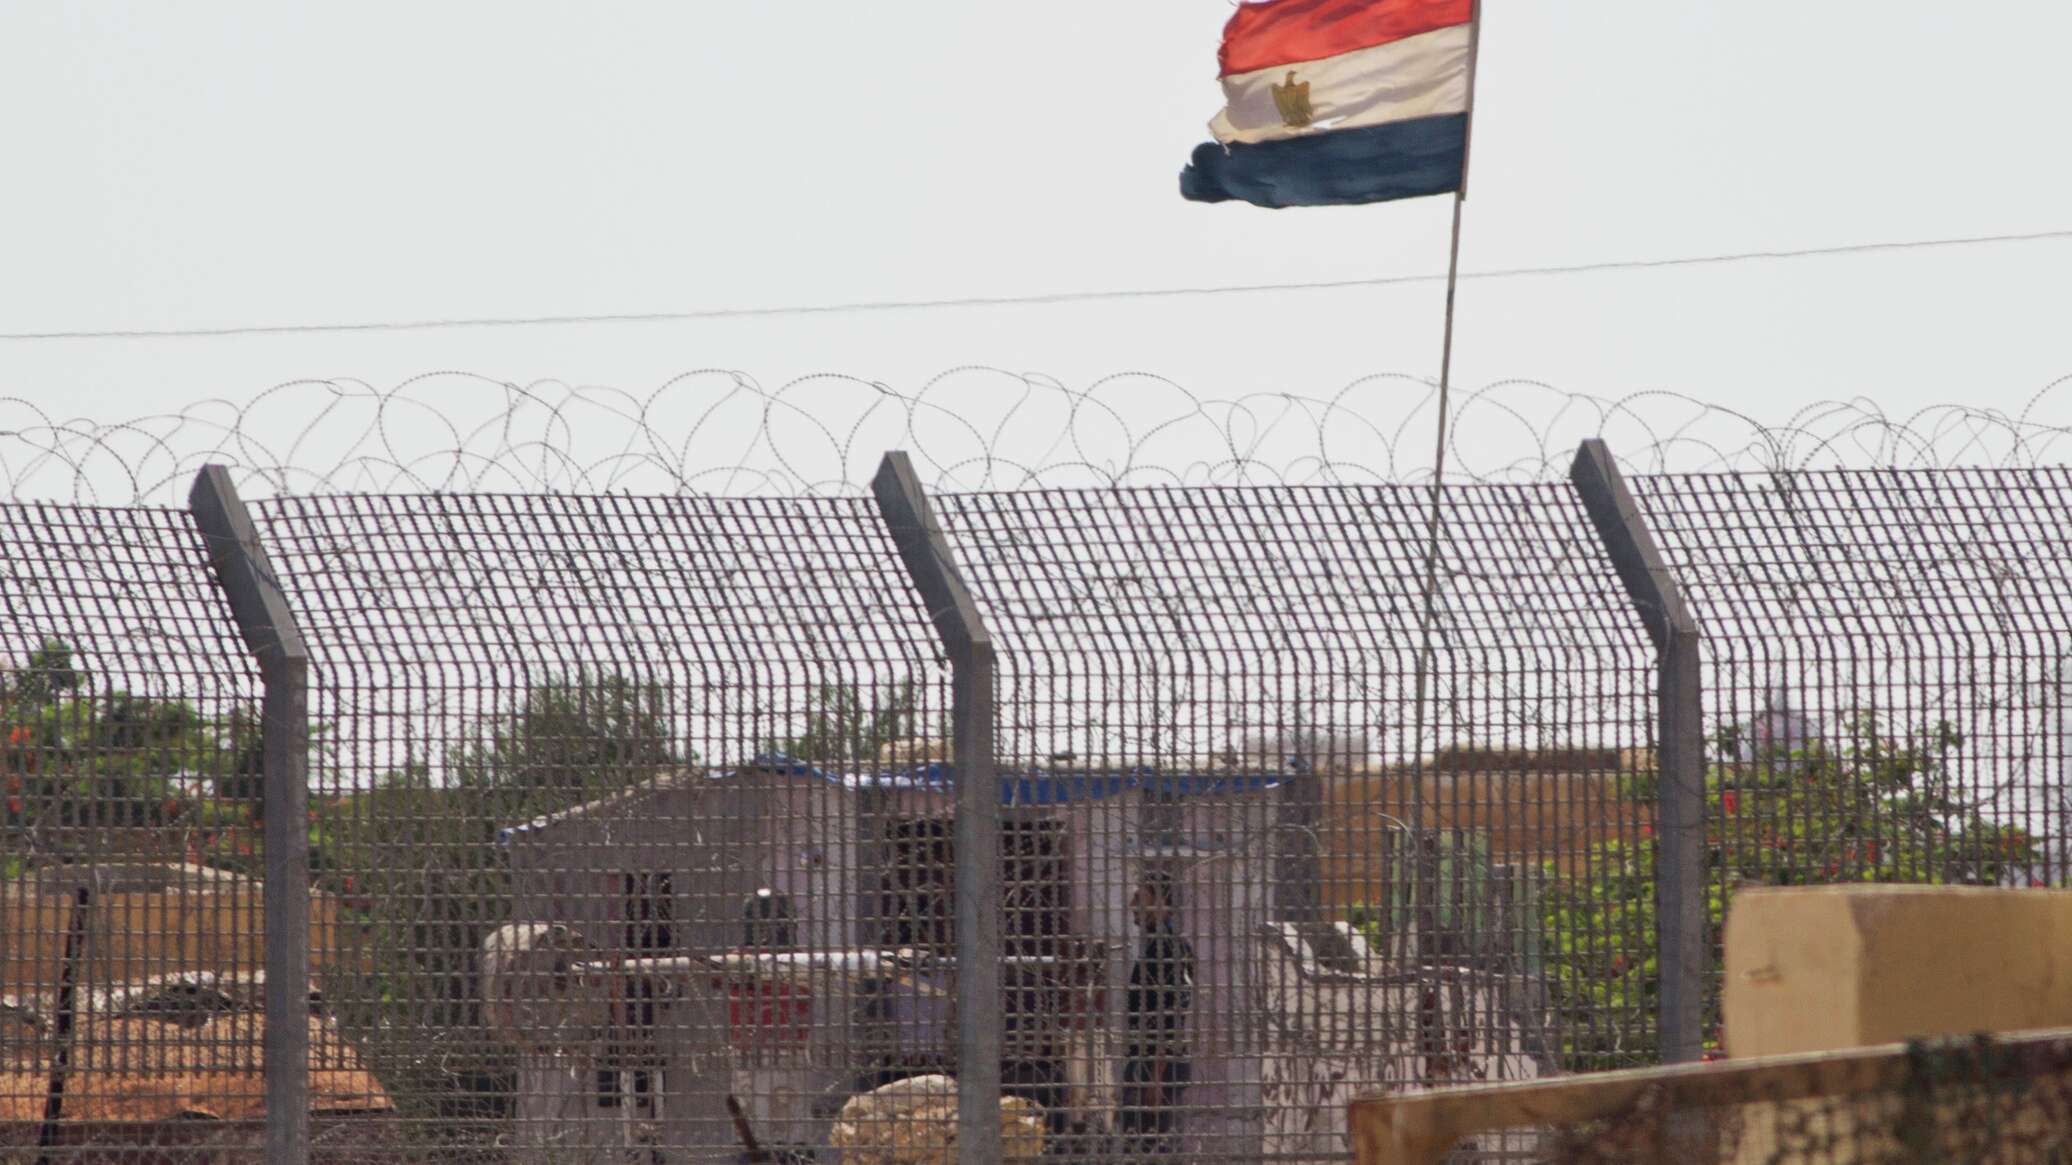 إسرائيل توجه دعوة عاجلة إلى مواطنيها في مصر بعد "حادث الإسكندرية"